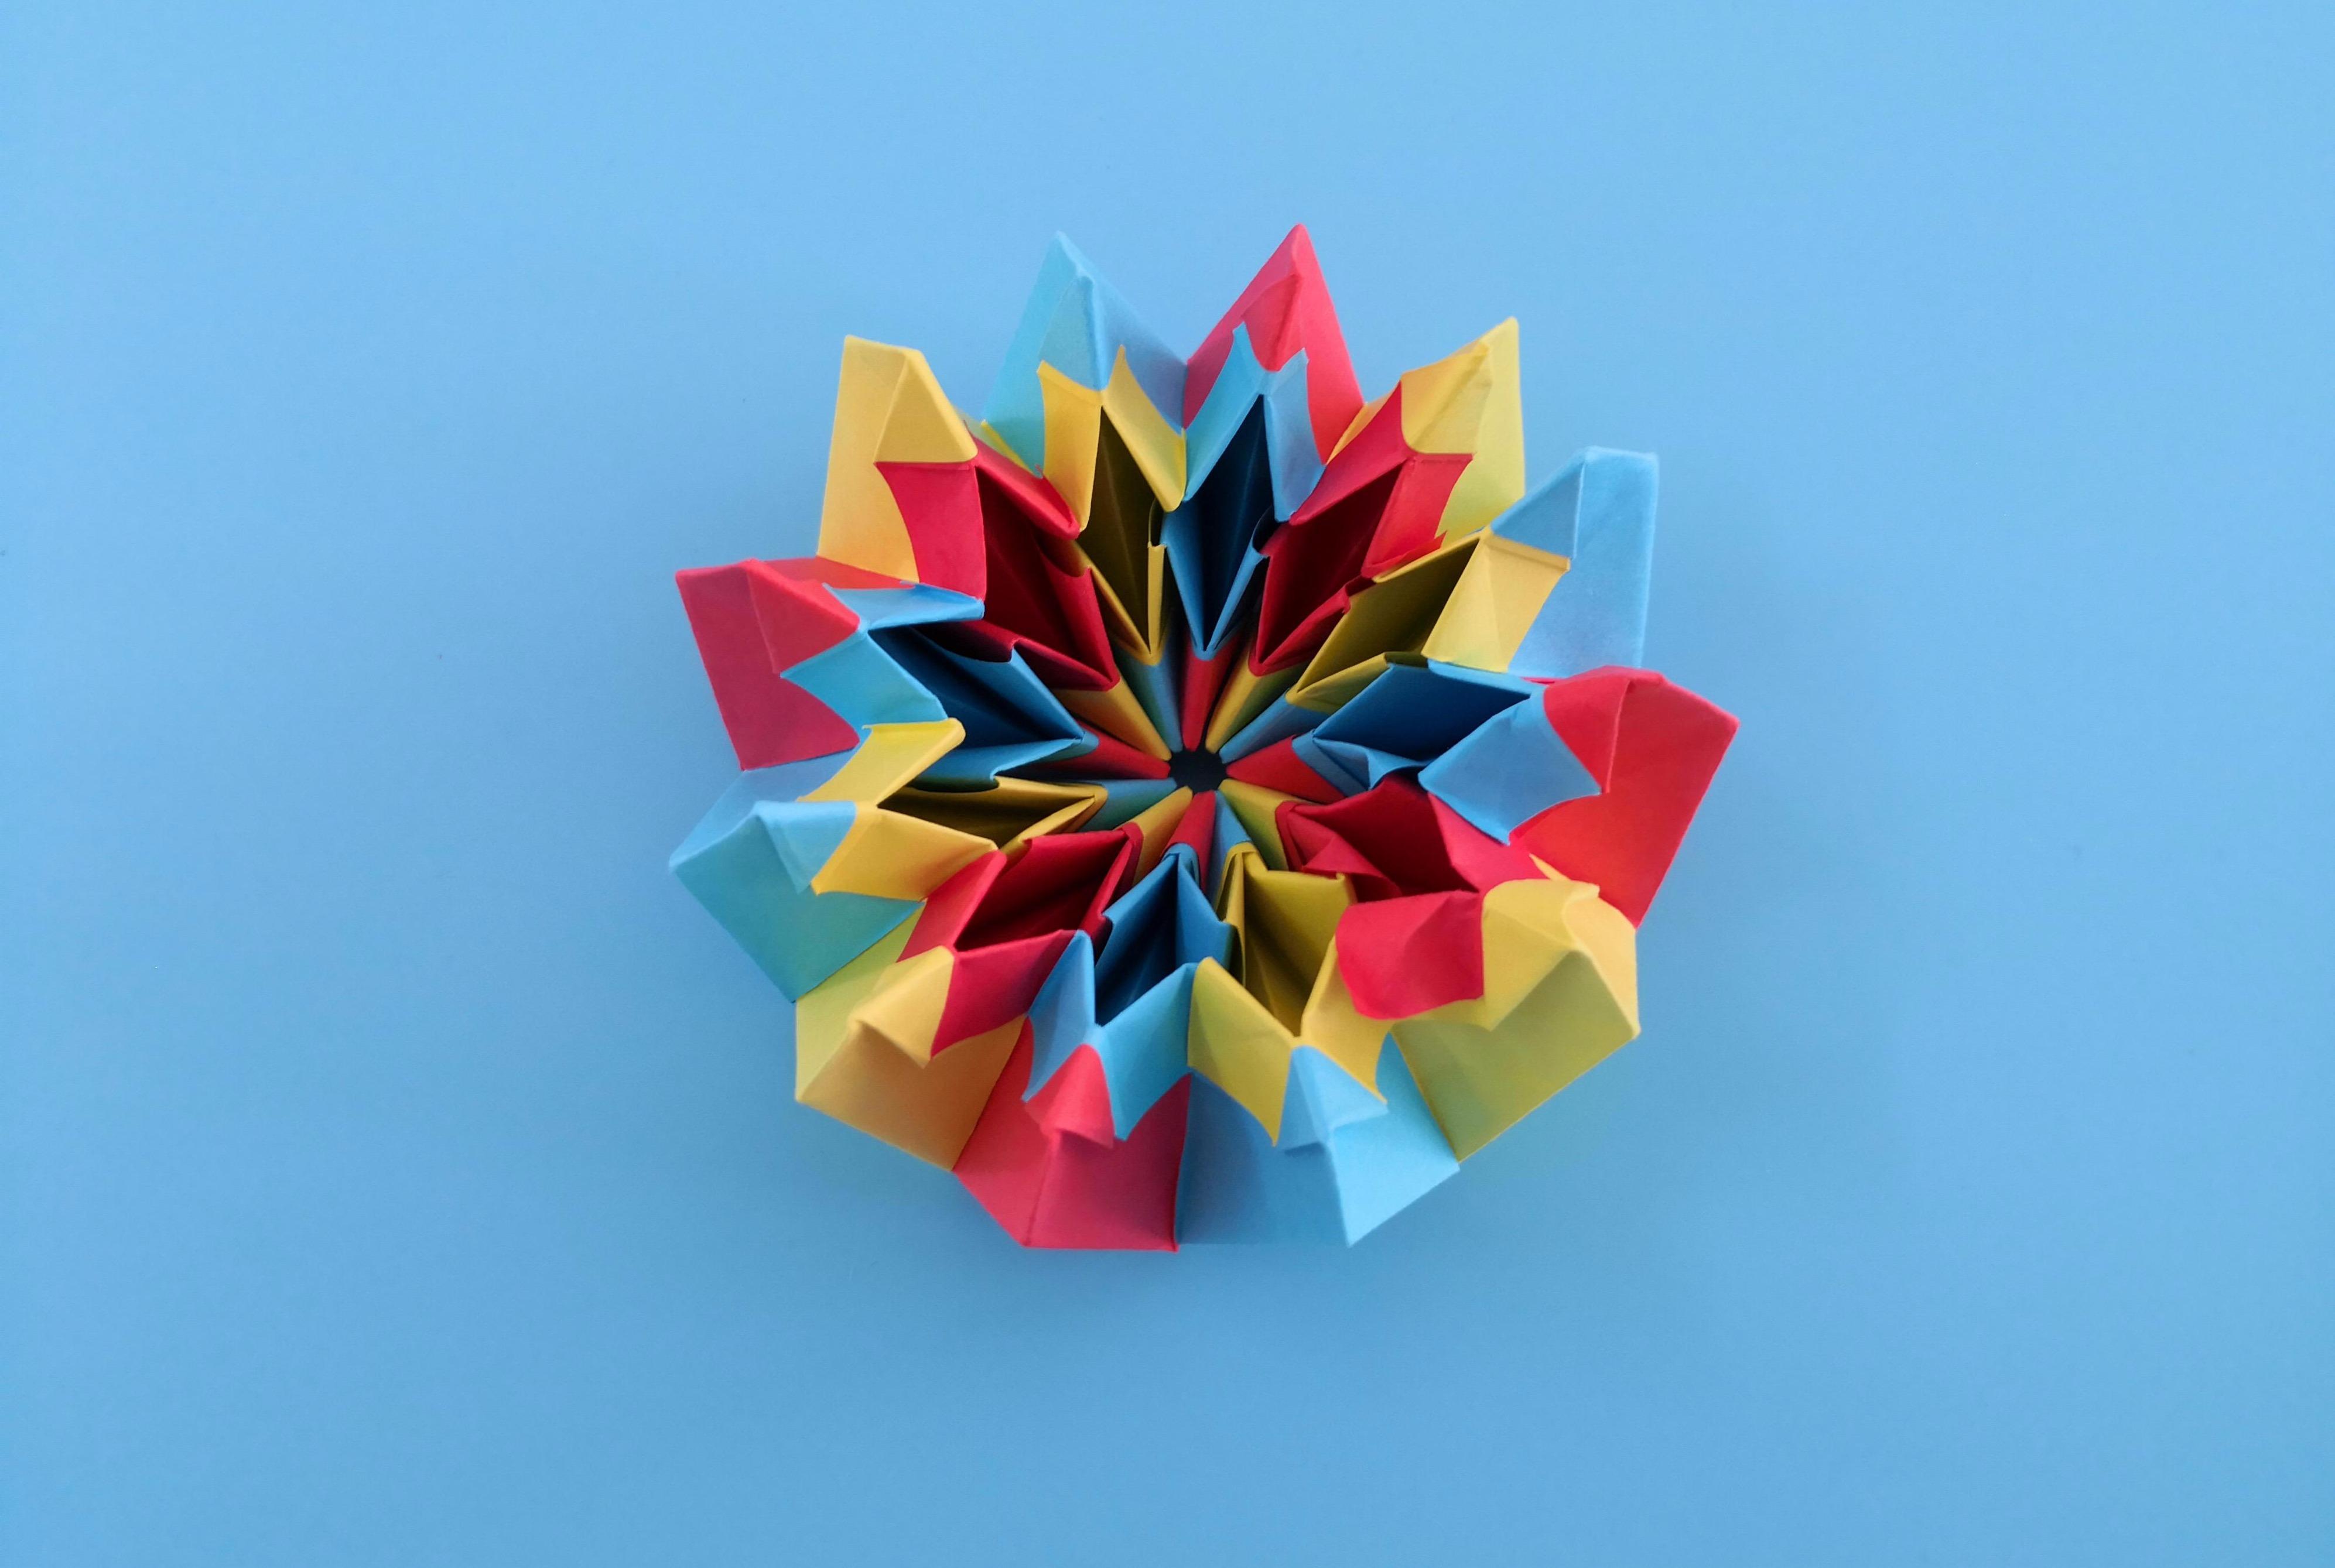 视频:可以无限翻转的烟花折纸,简单又漂亮,无聊时候可以玩一天